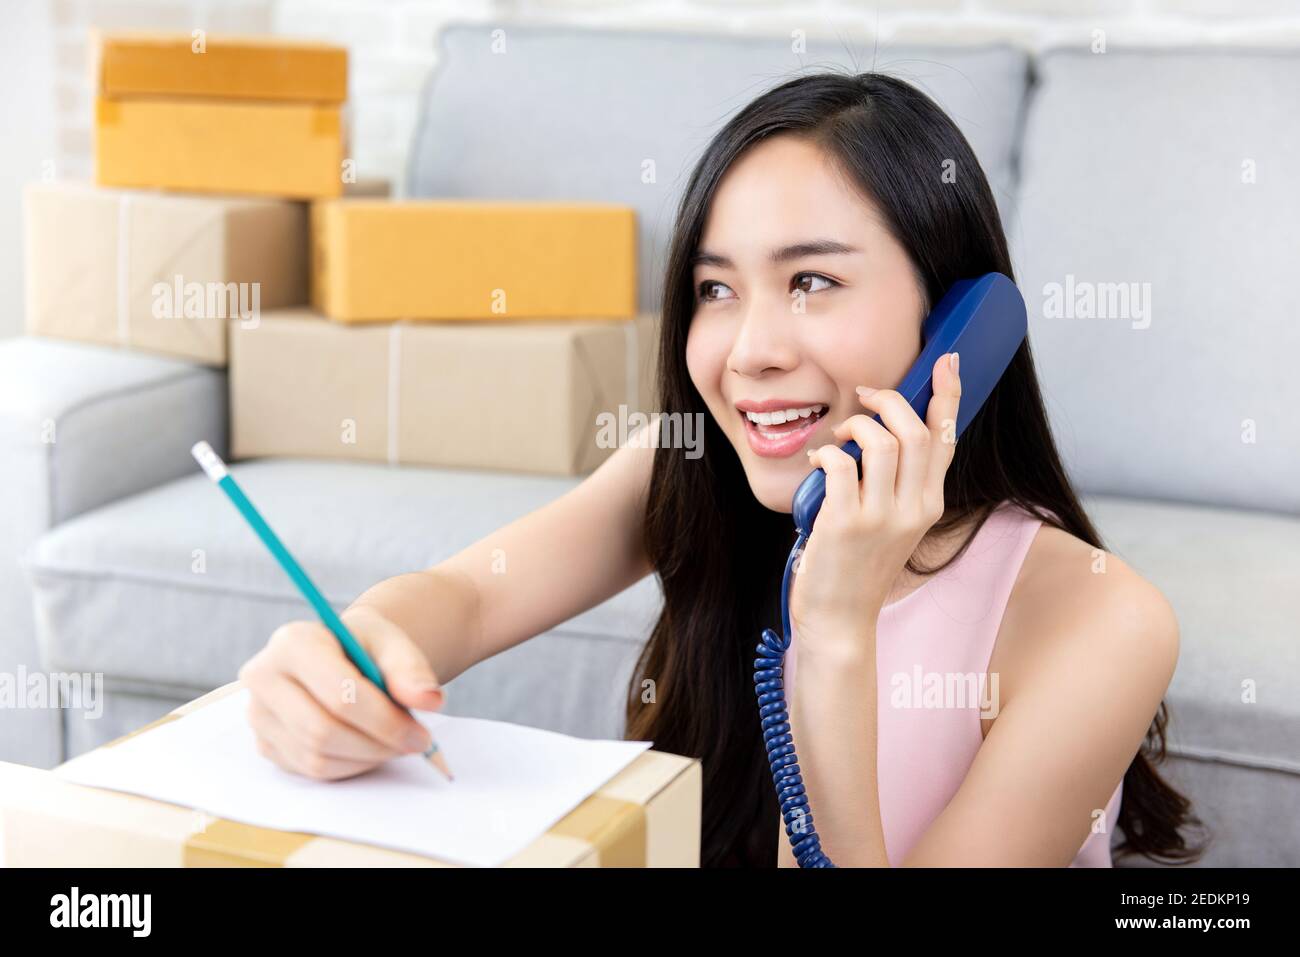 Jeune femme asiatique entrepreneur ou freelance vendeur en ligne travaillant à accueil confirmant les commandes du client sur le téléphone se préparant pour livraison Banque D'Images